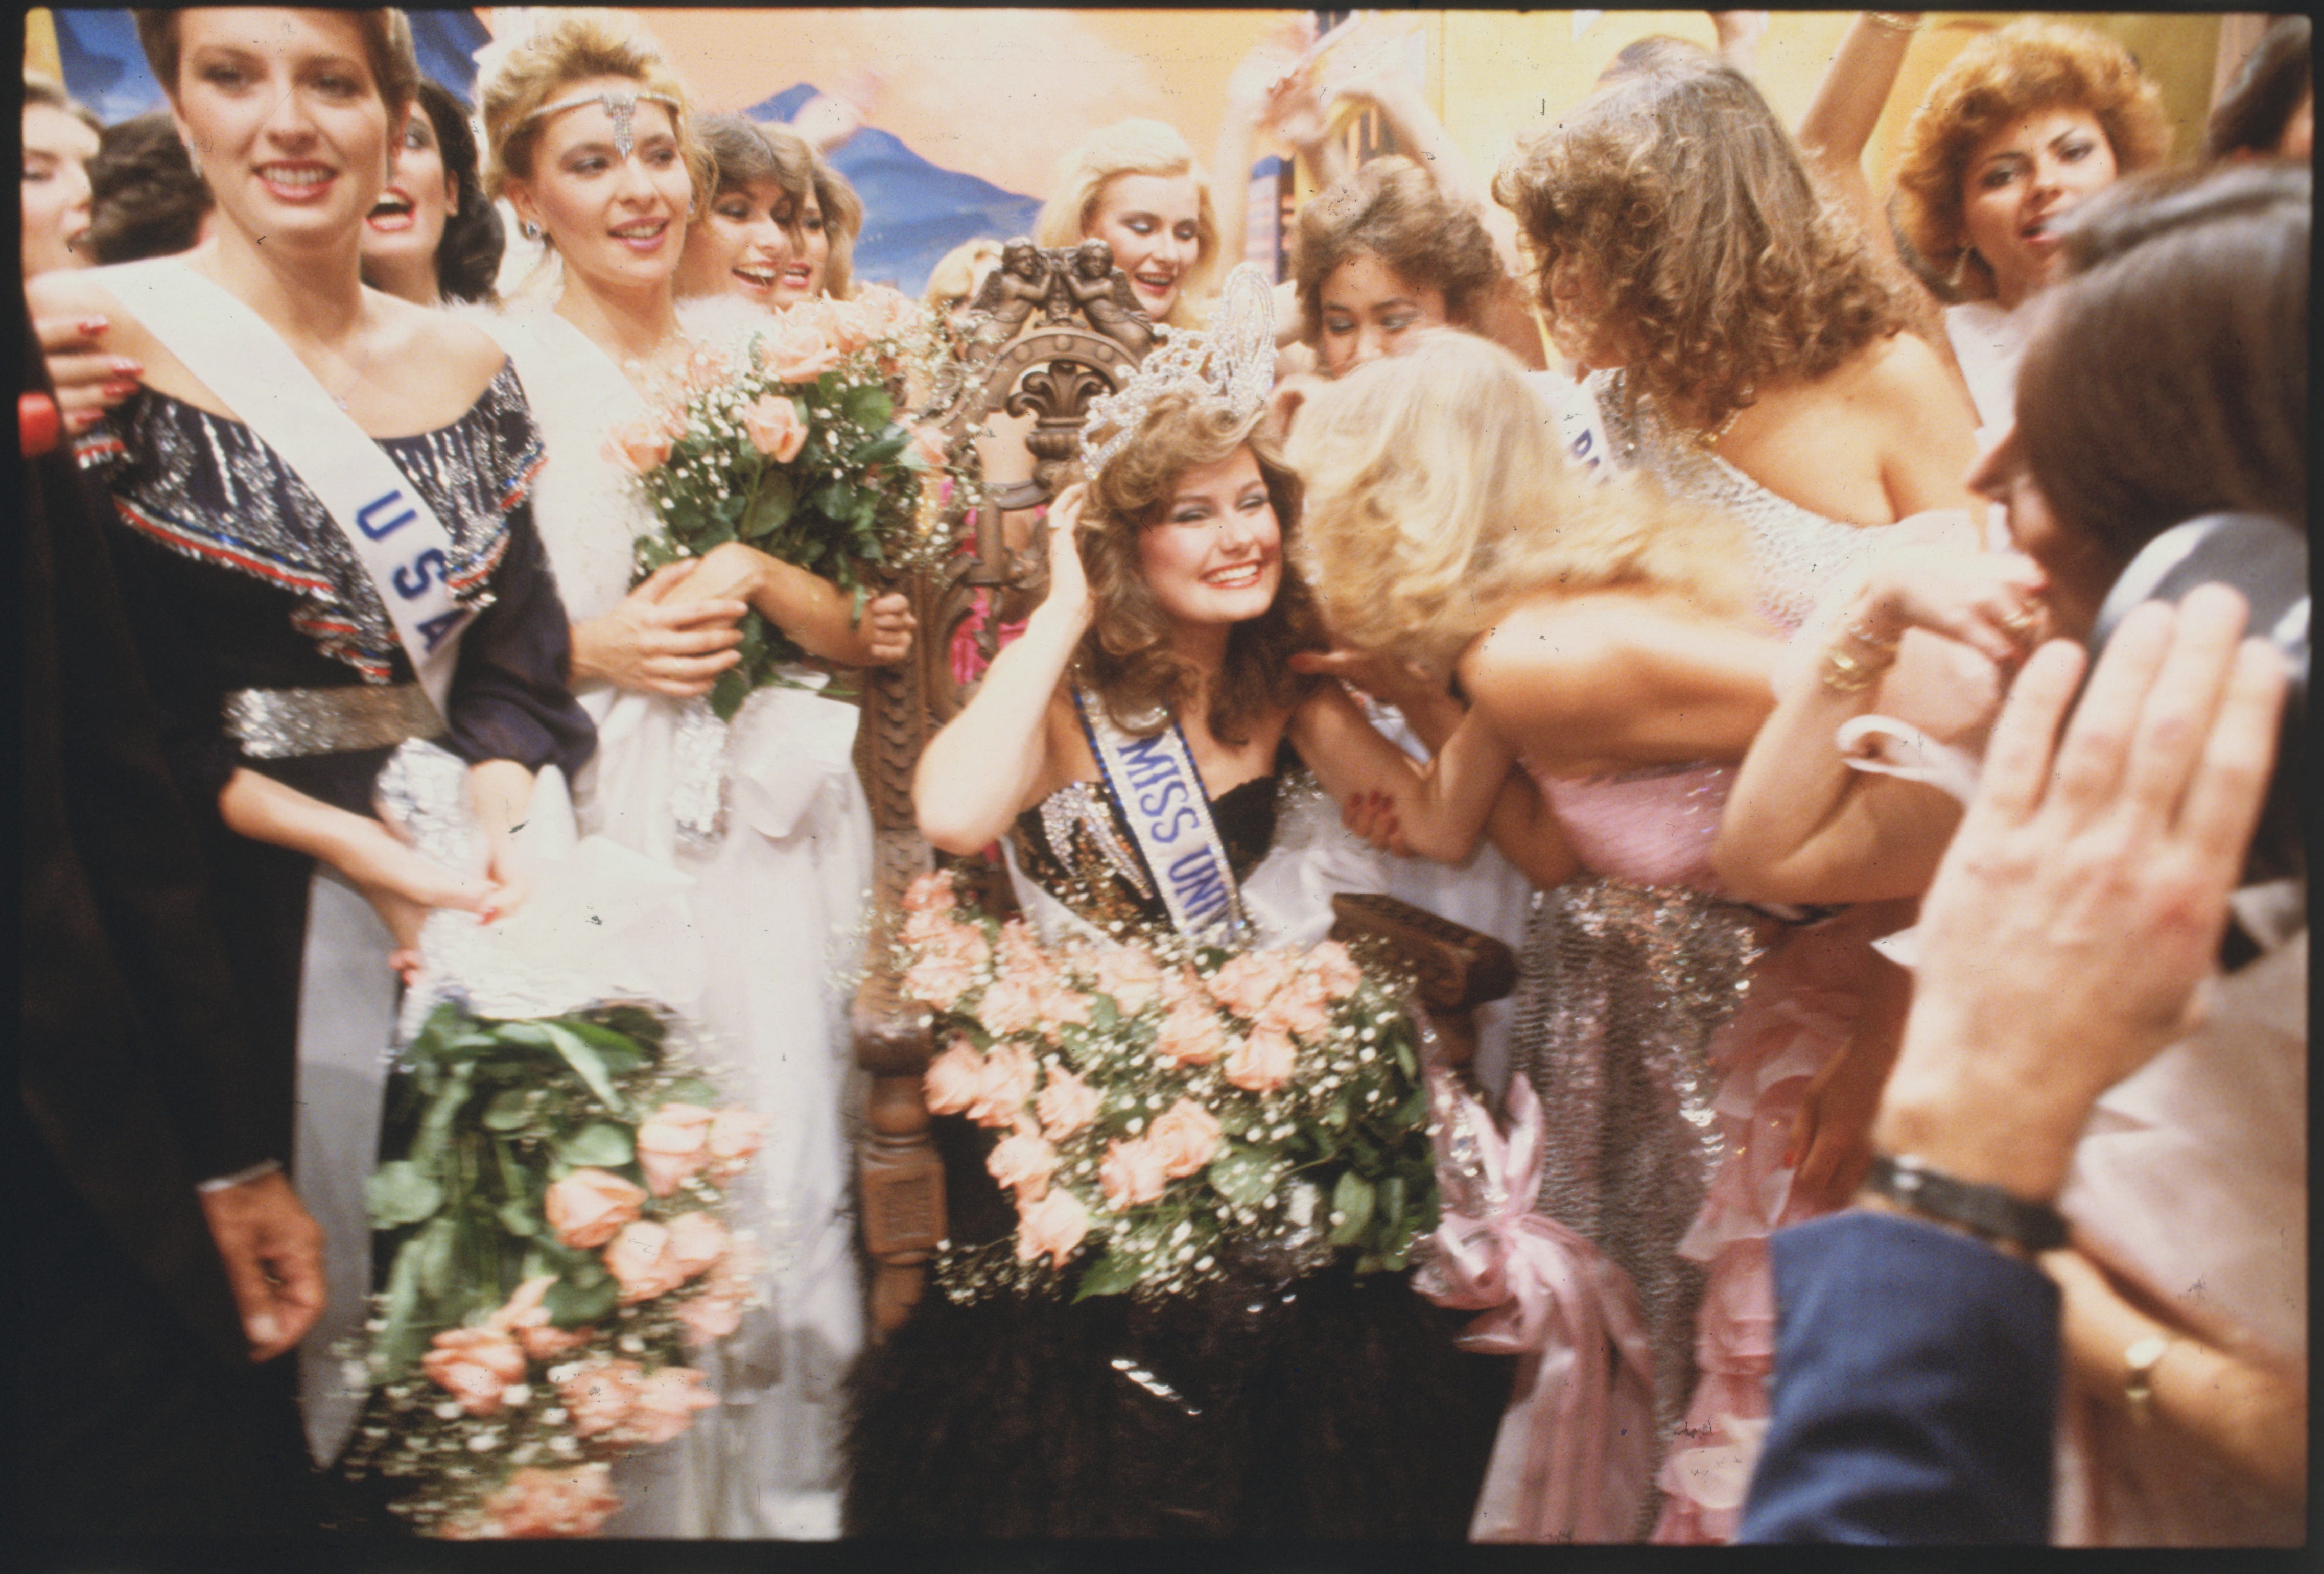 Karen Baldwin, die ehemalige Miss Canada, sitzt auf ihrem Thron, nachdem sie 1982 den Titel Miss Universe gewonnen hat. Karen stammt aus London, Ontario.